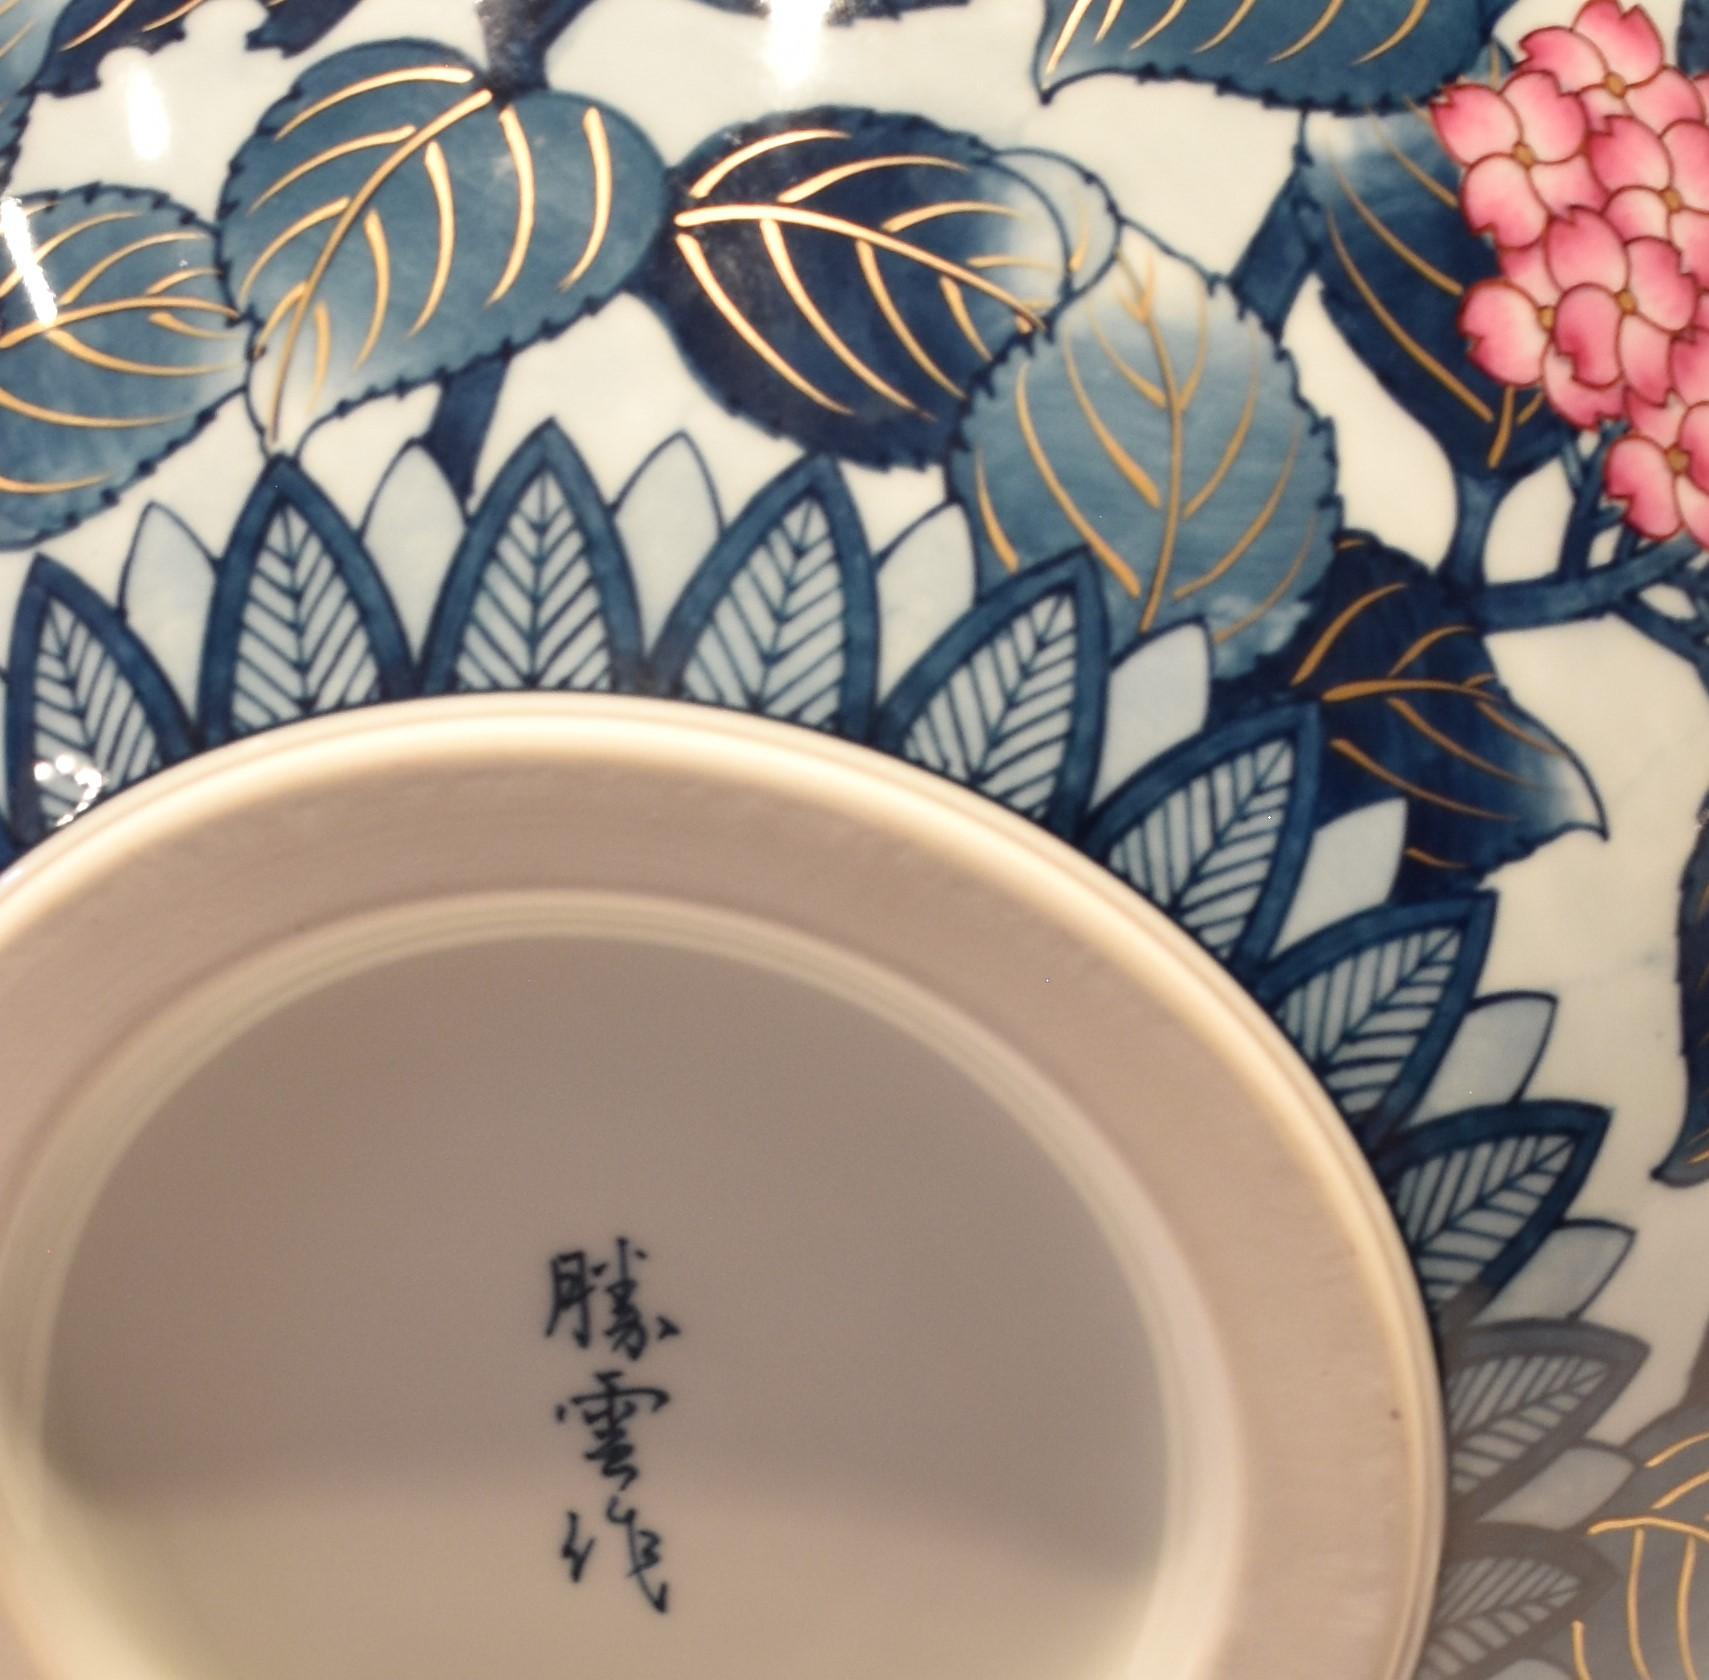 Large Blue White Red Porcelain Vase by Japanese Master Artist 4